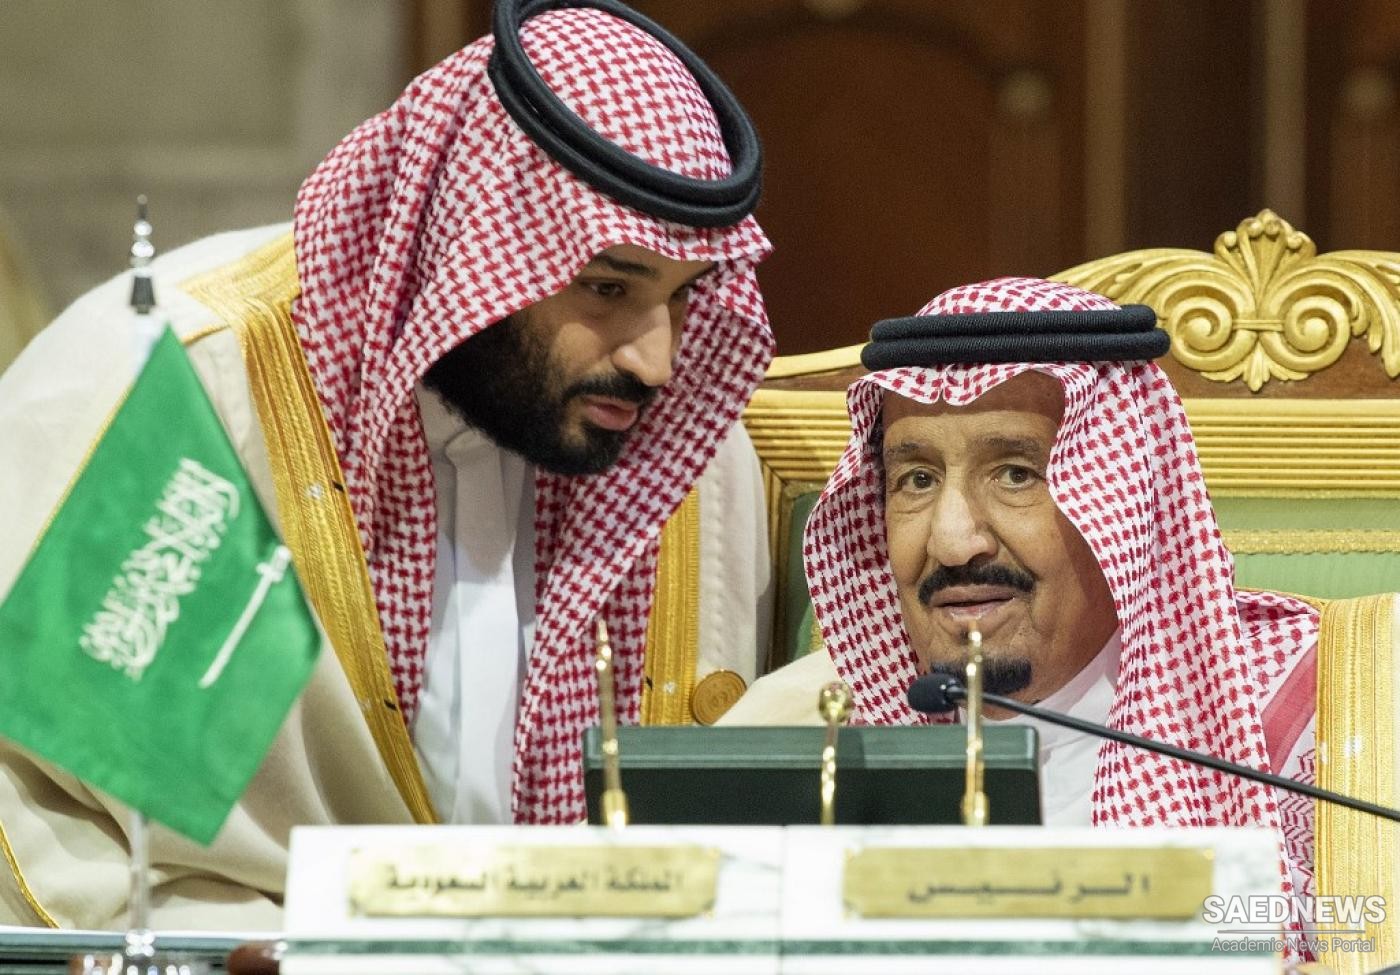 सऊदी अरब के राजा ने इस्लामिक रिपब्लिक ऑफ ईरान के खिलाफ आधारहीन आरोप लगाए